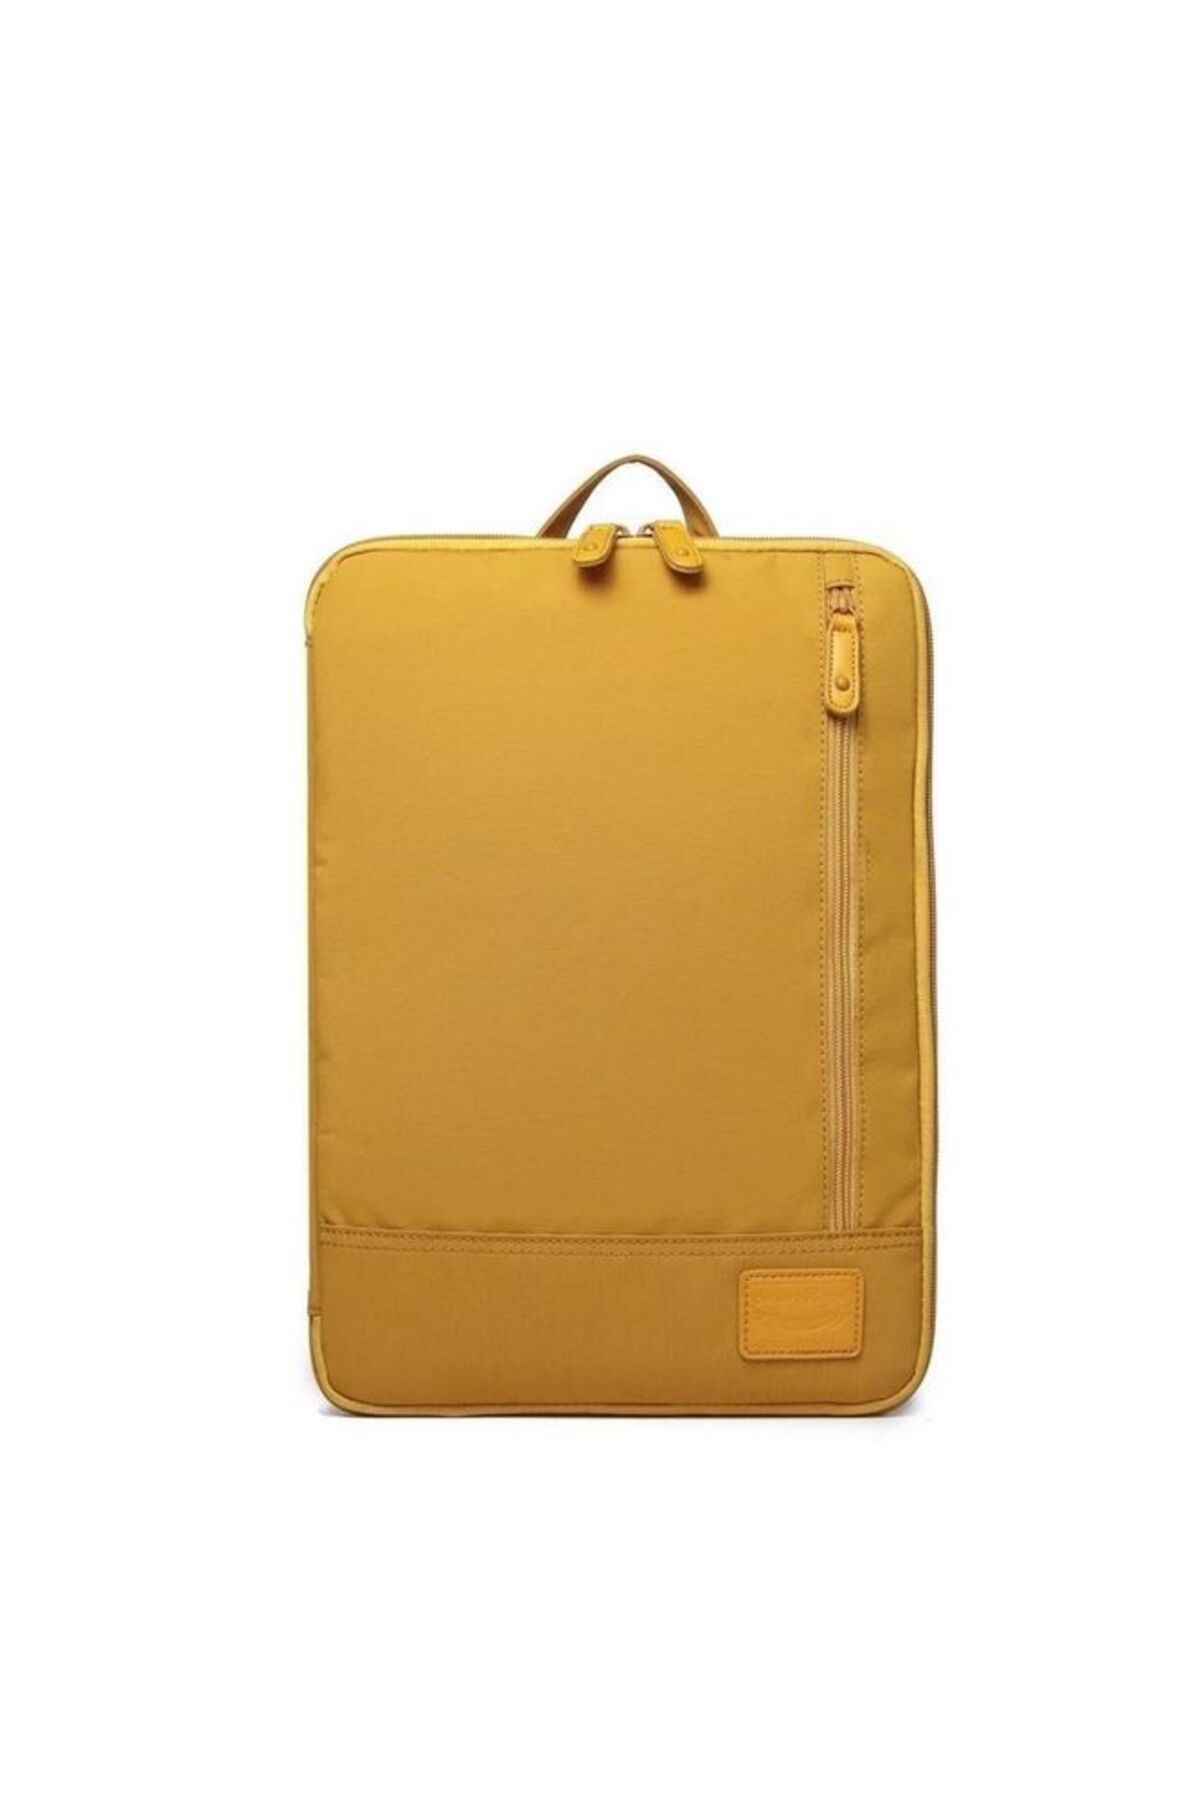 Smart Bags Hardal Unisex Laptop & Evrak Çantası Smb3191